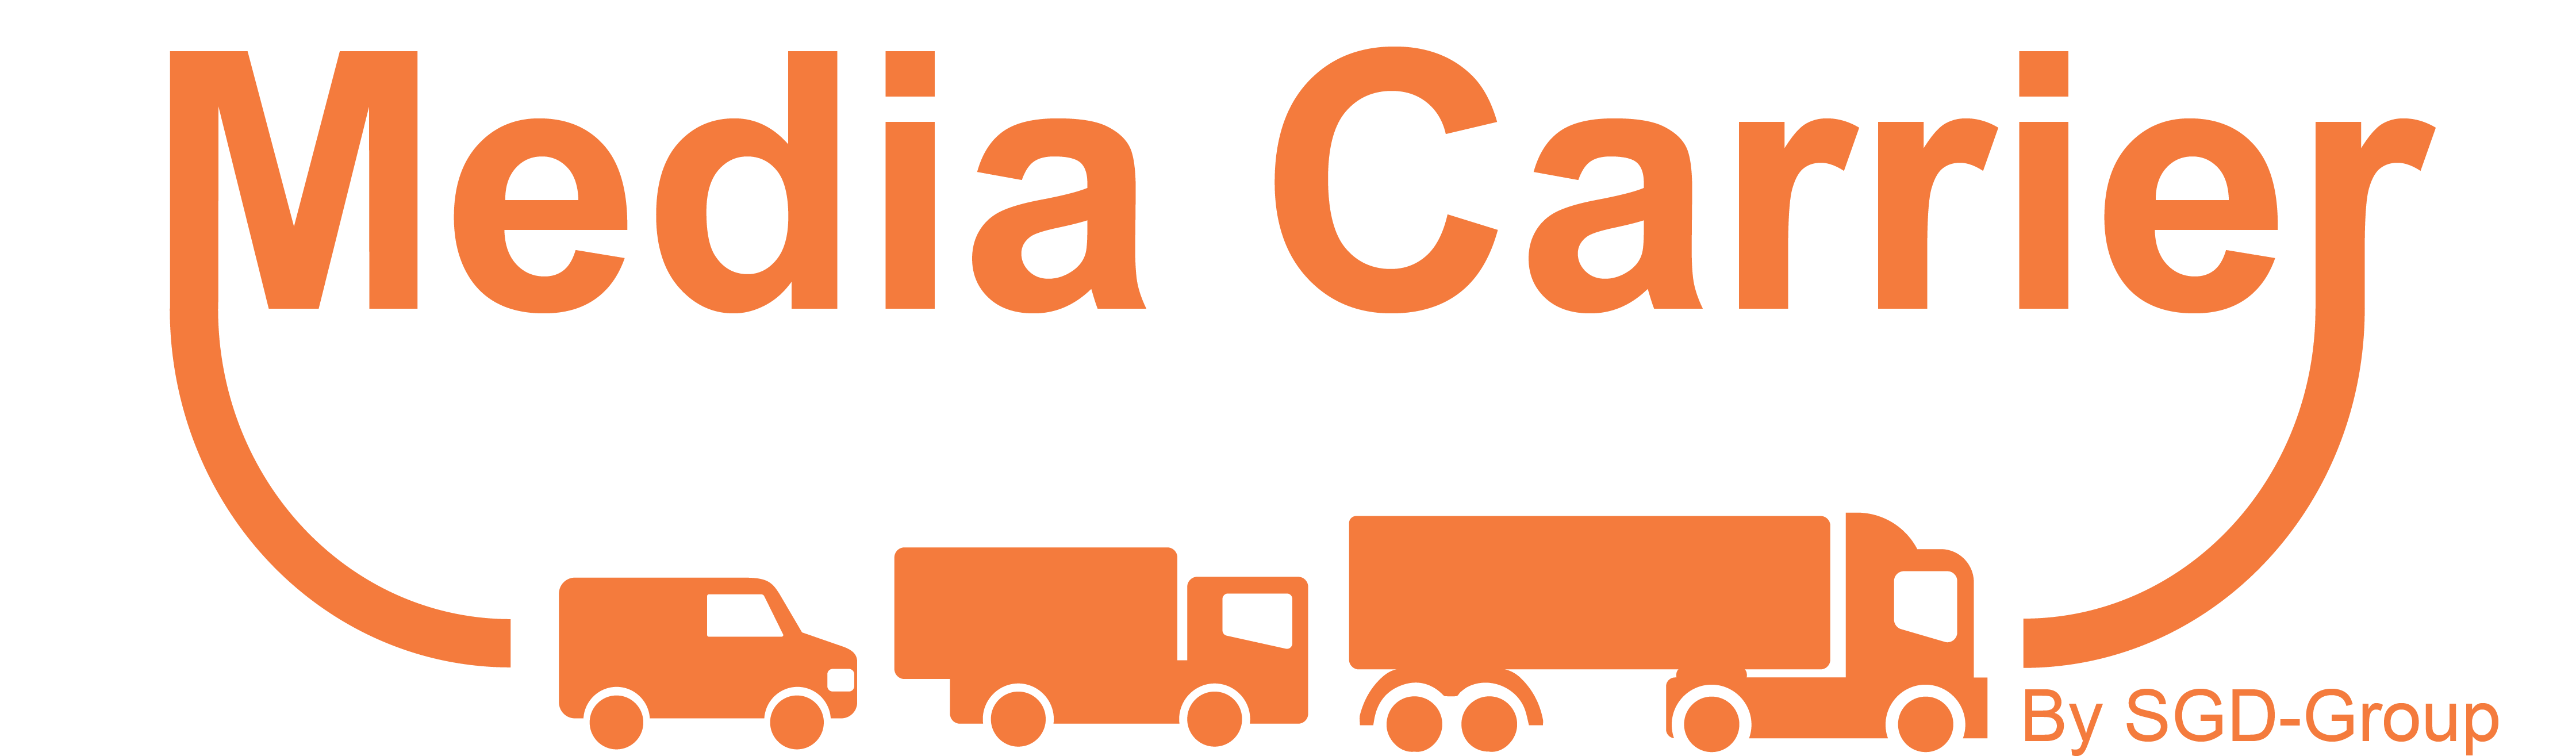 Media Carrier logo